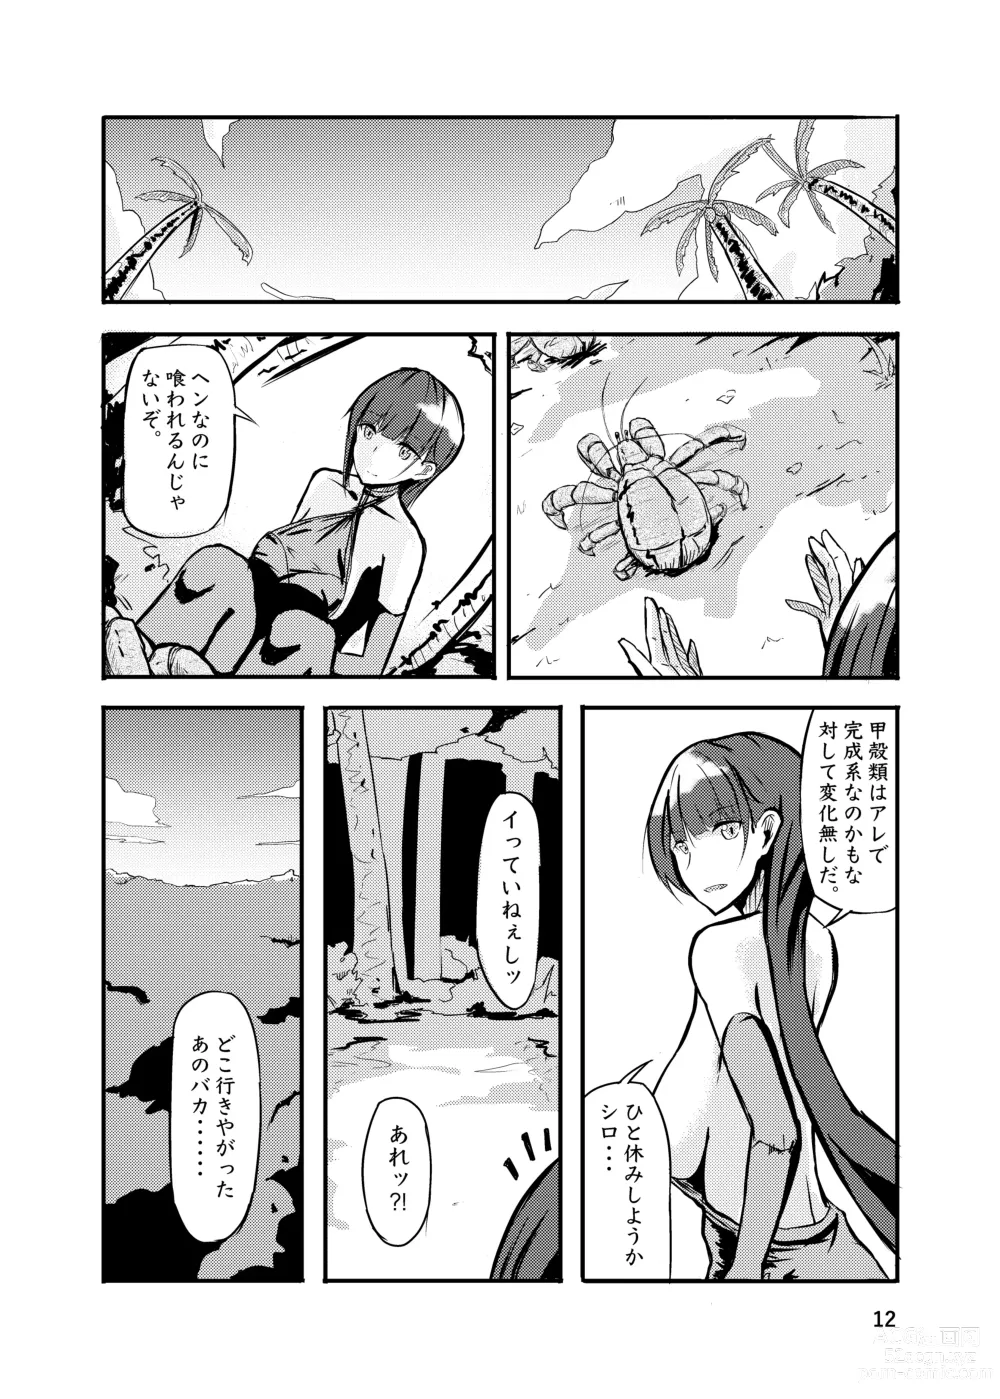 Page 12 of doujinshi 800-man Hiki no Kami-sama.